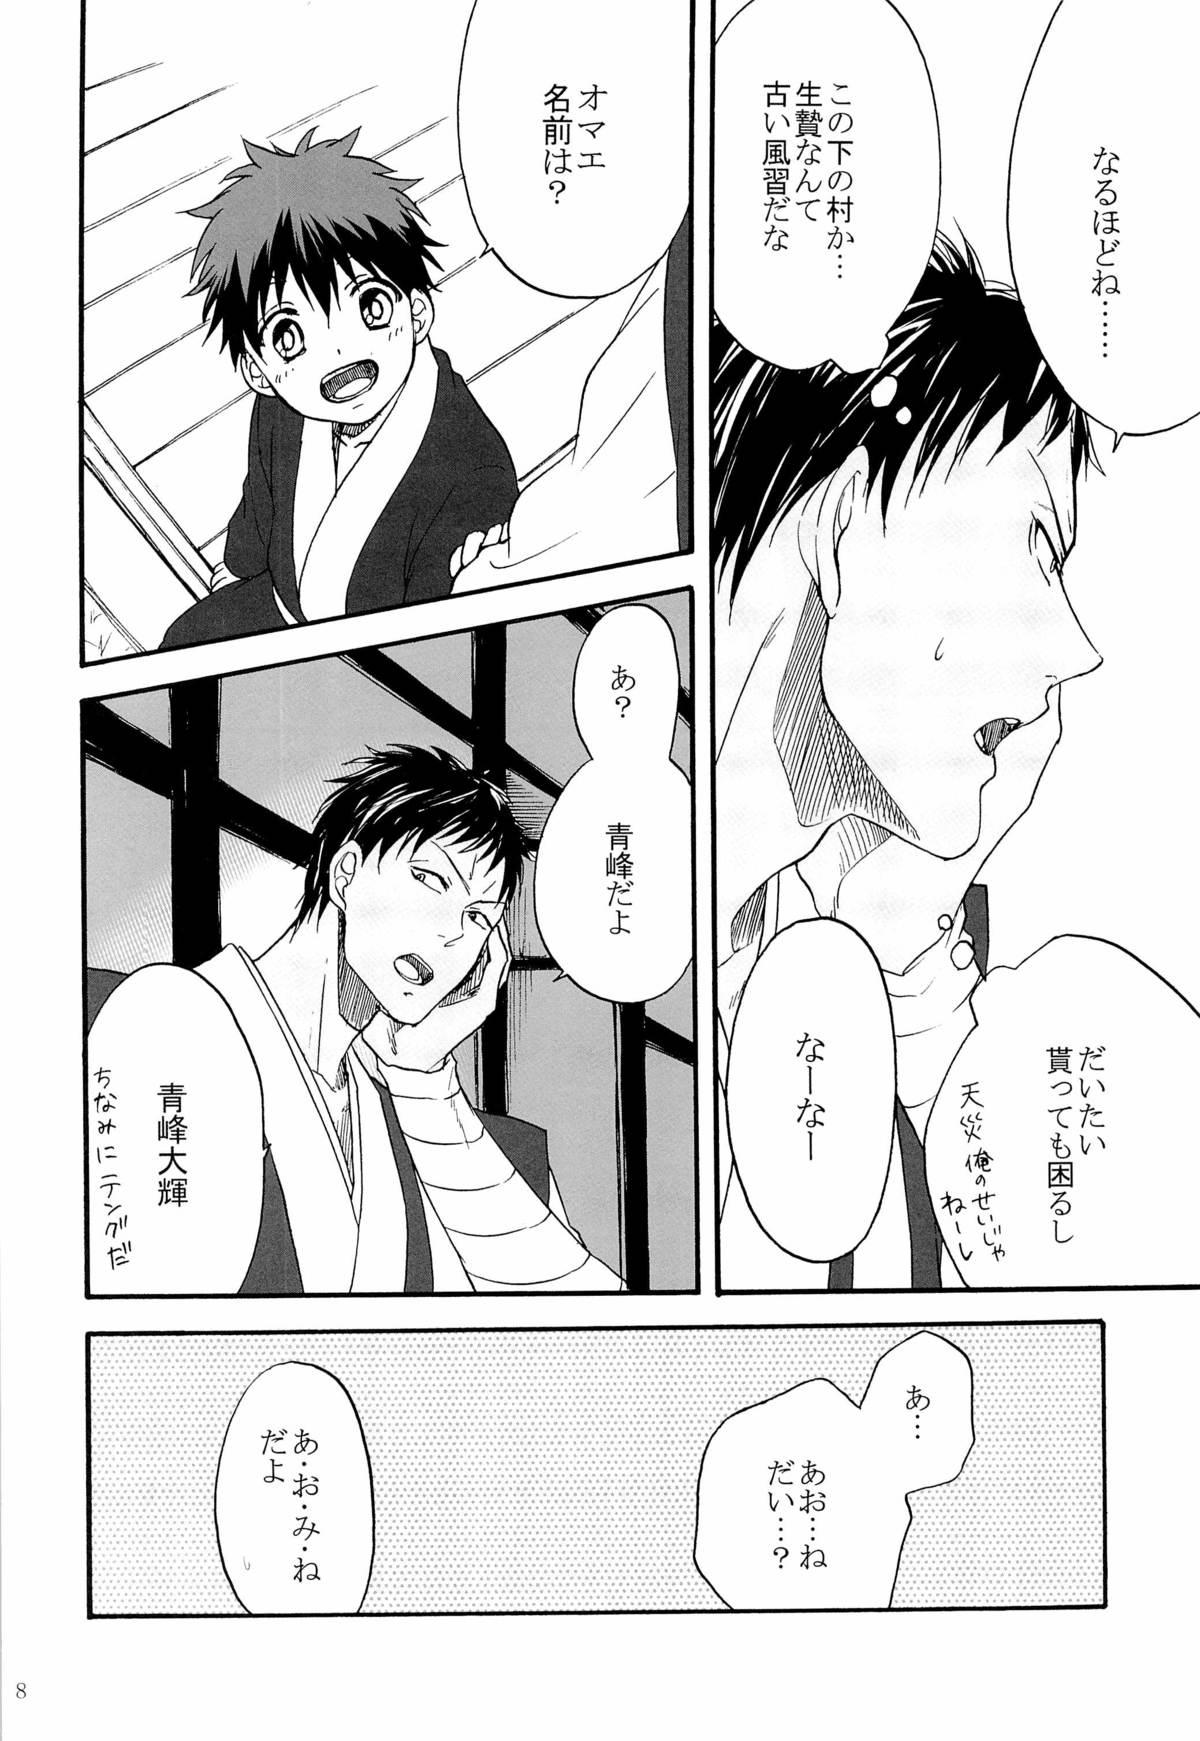 Pareja Tengu to Kumotsu - Kuroko no basuke Car - Page 8